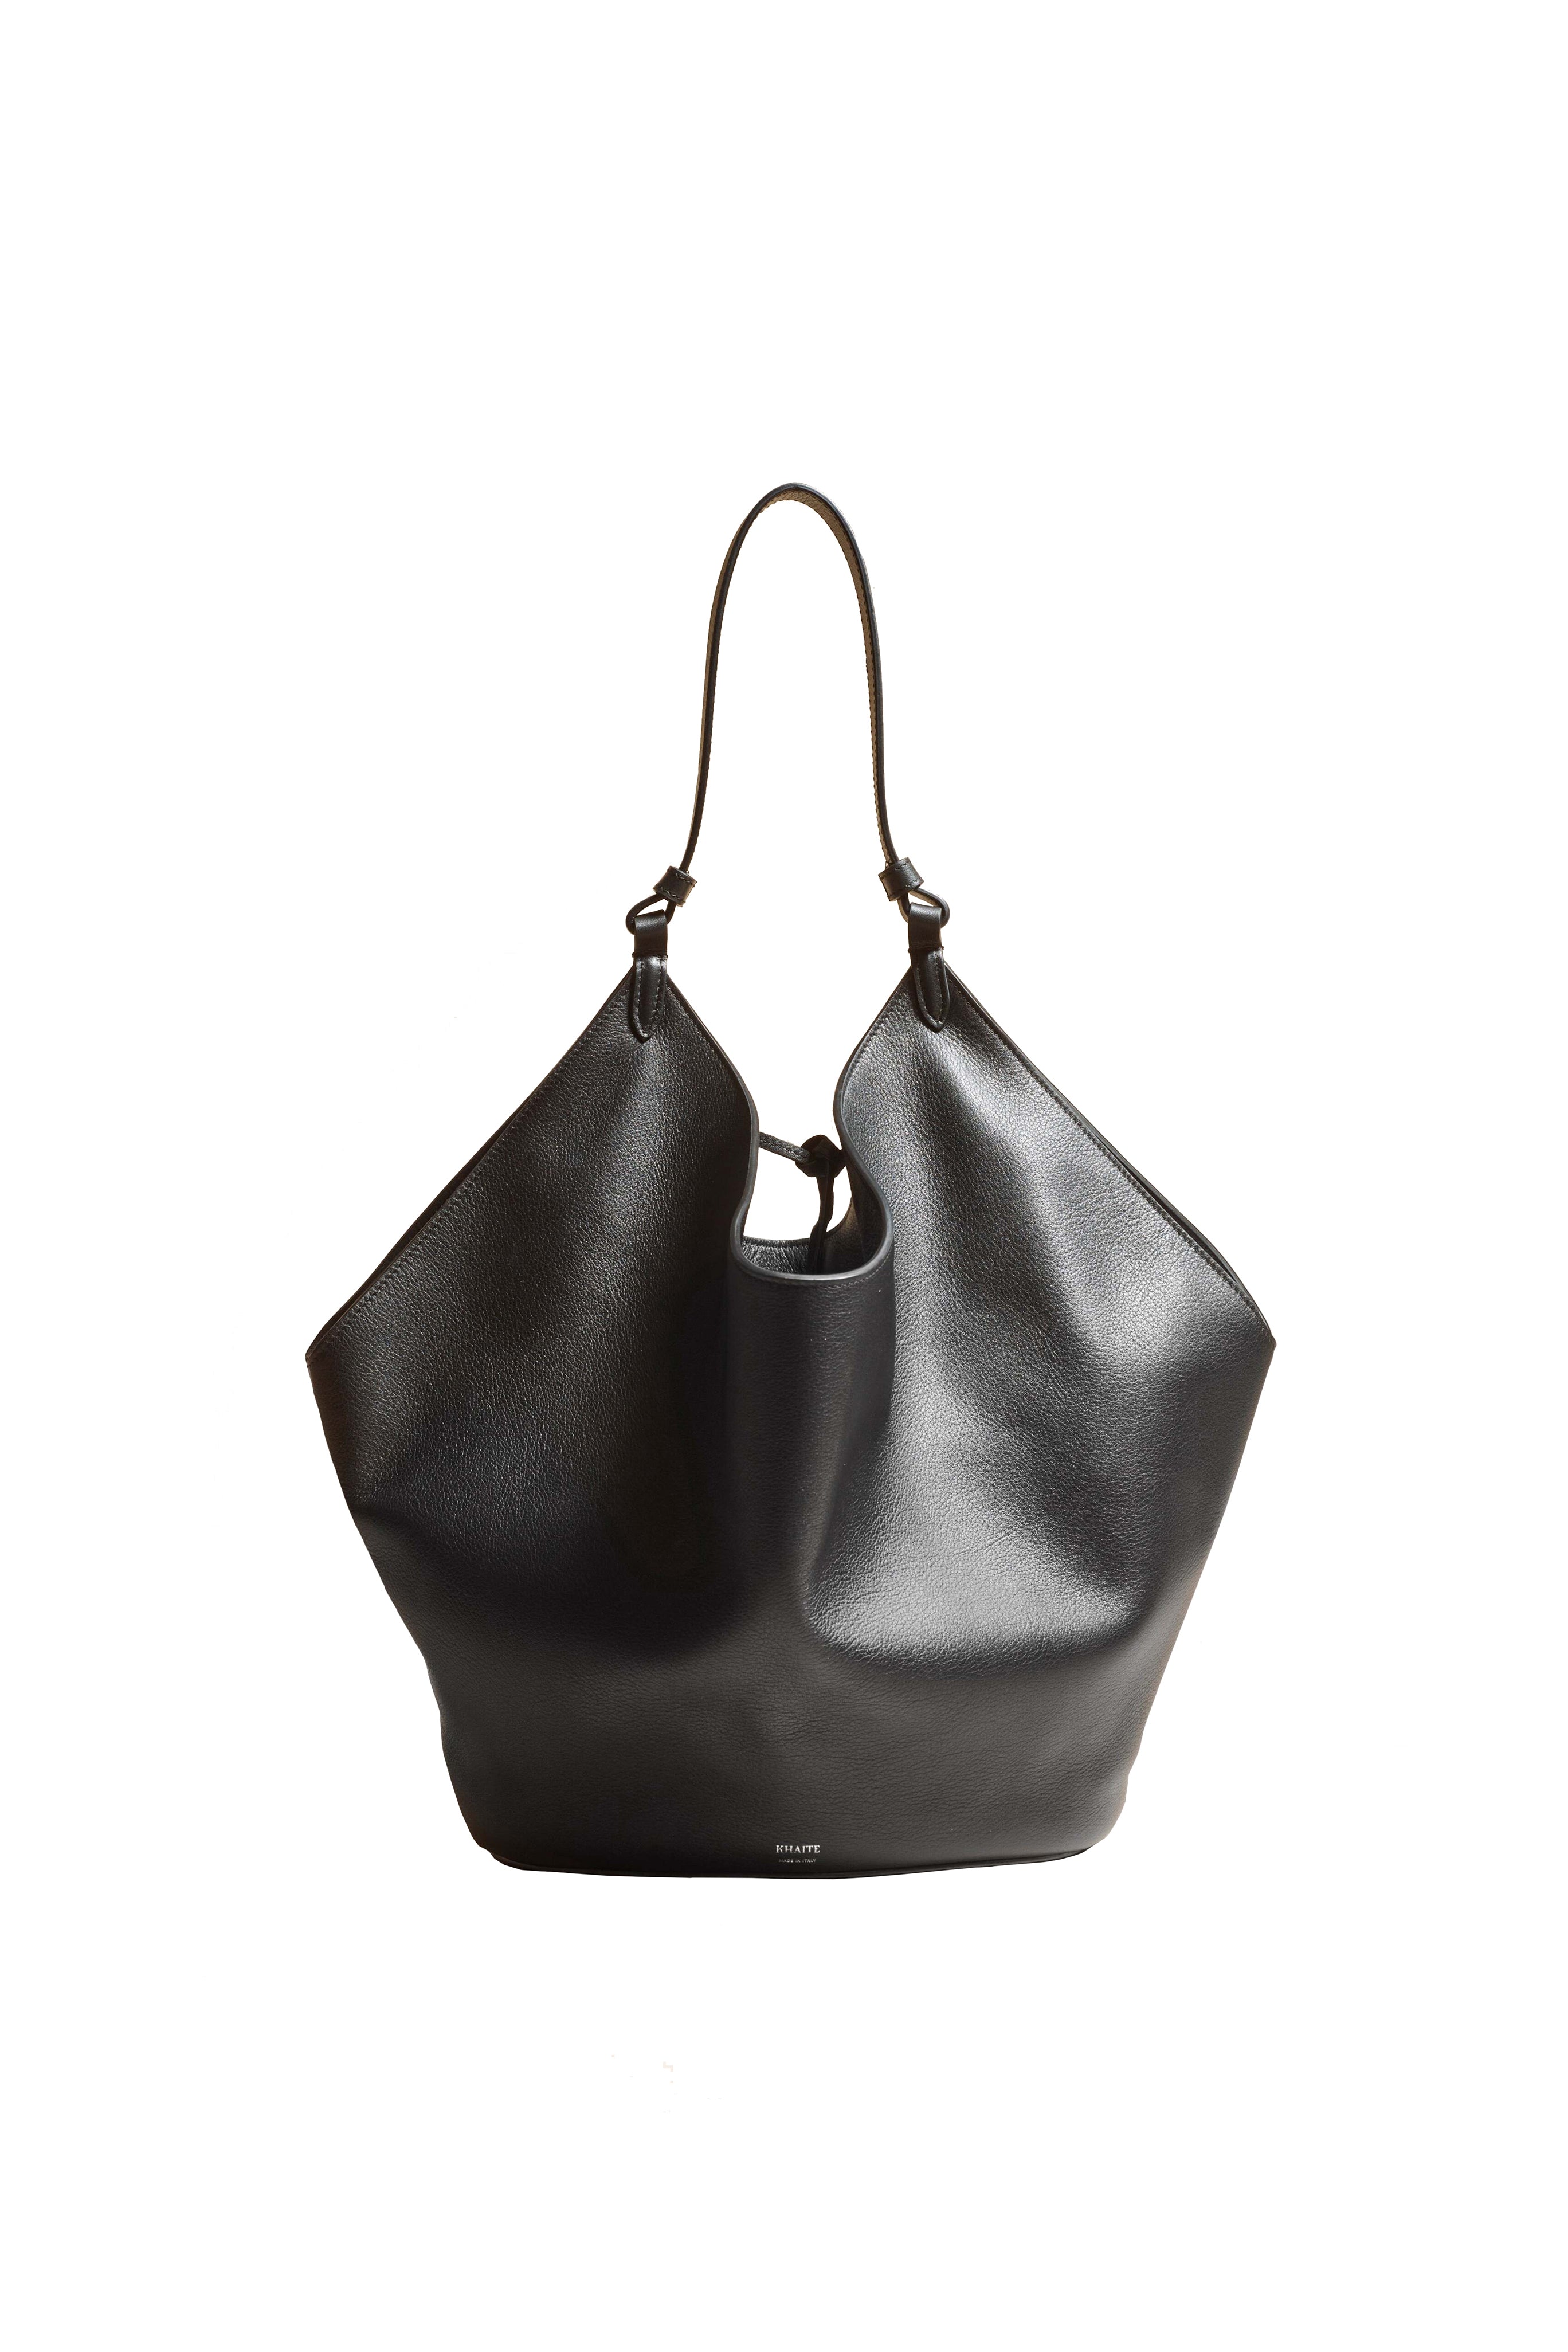 KHAITE Lotus Black Leather Medium Bag 